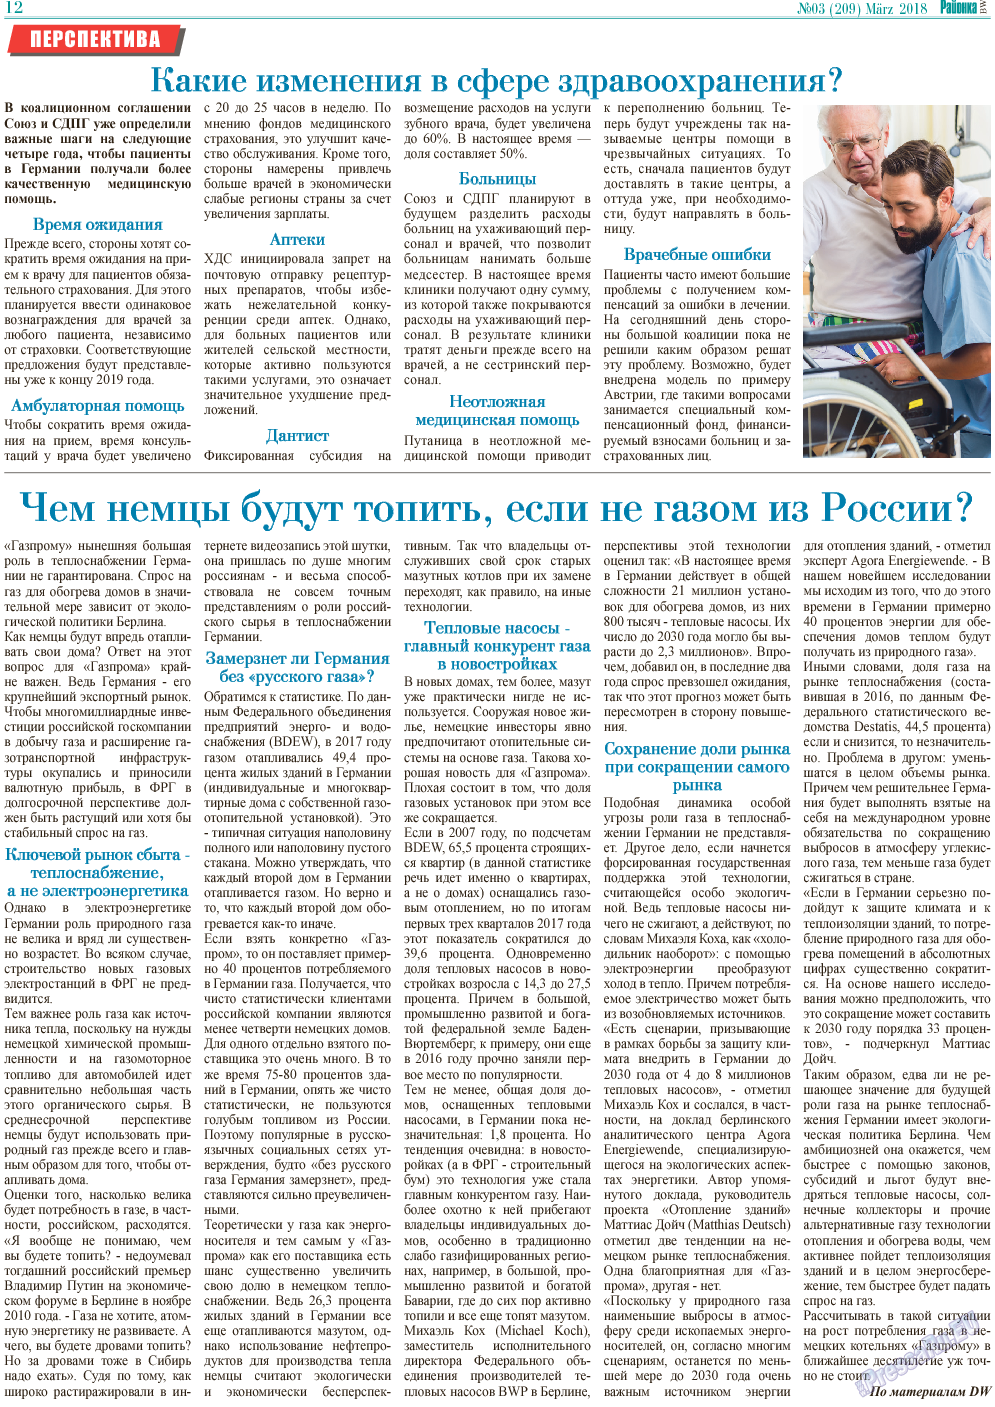 Районка-West, газета. 2018 №3 стр.12